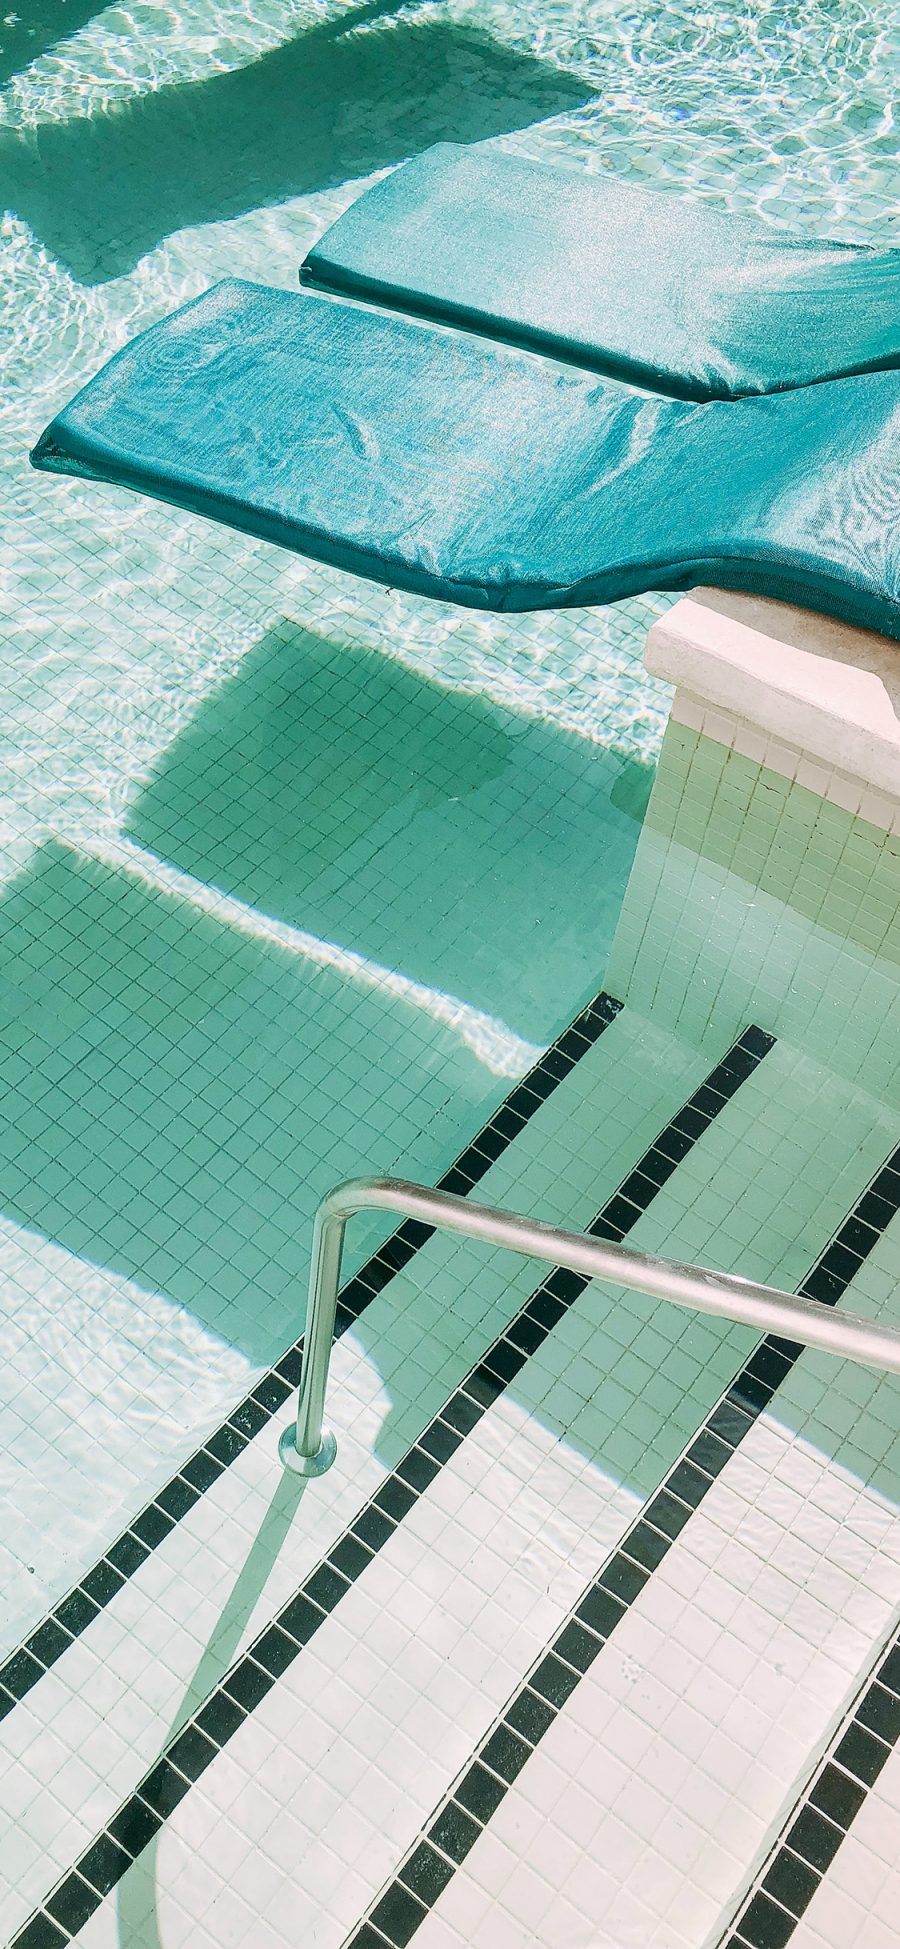 [2436×1125]休闲 度假 泳池 垫子 苹果手机壁纸图片